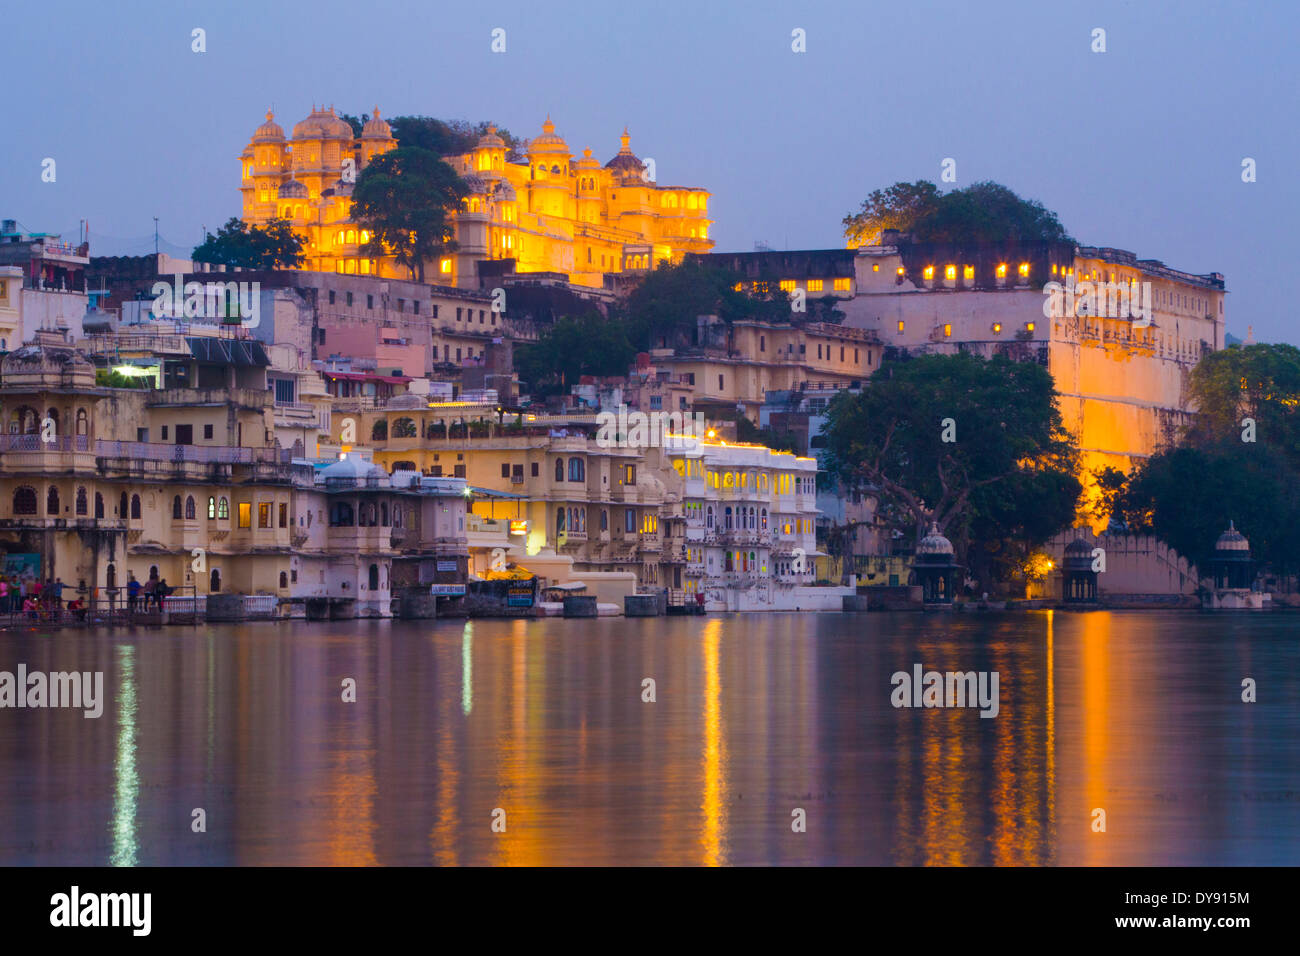 Palace, Maharana, Pichola, le lac Pichola, Udaipur, Rajasthan, Inde, Asie, lac, nuit, illuminé, Banque D'Images